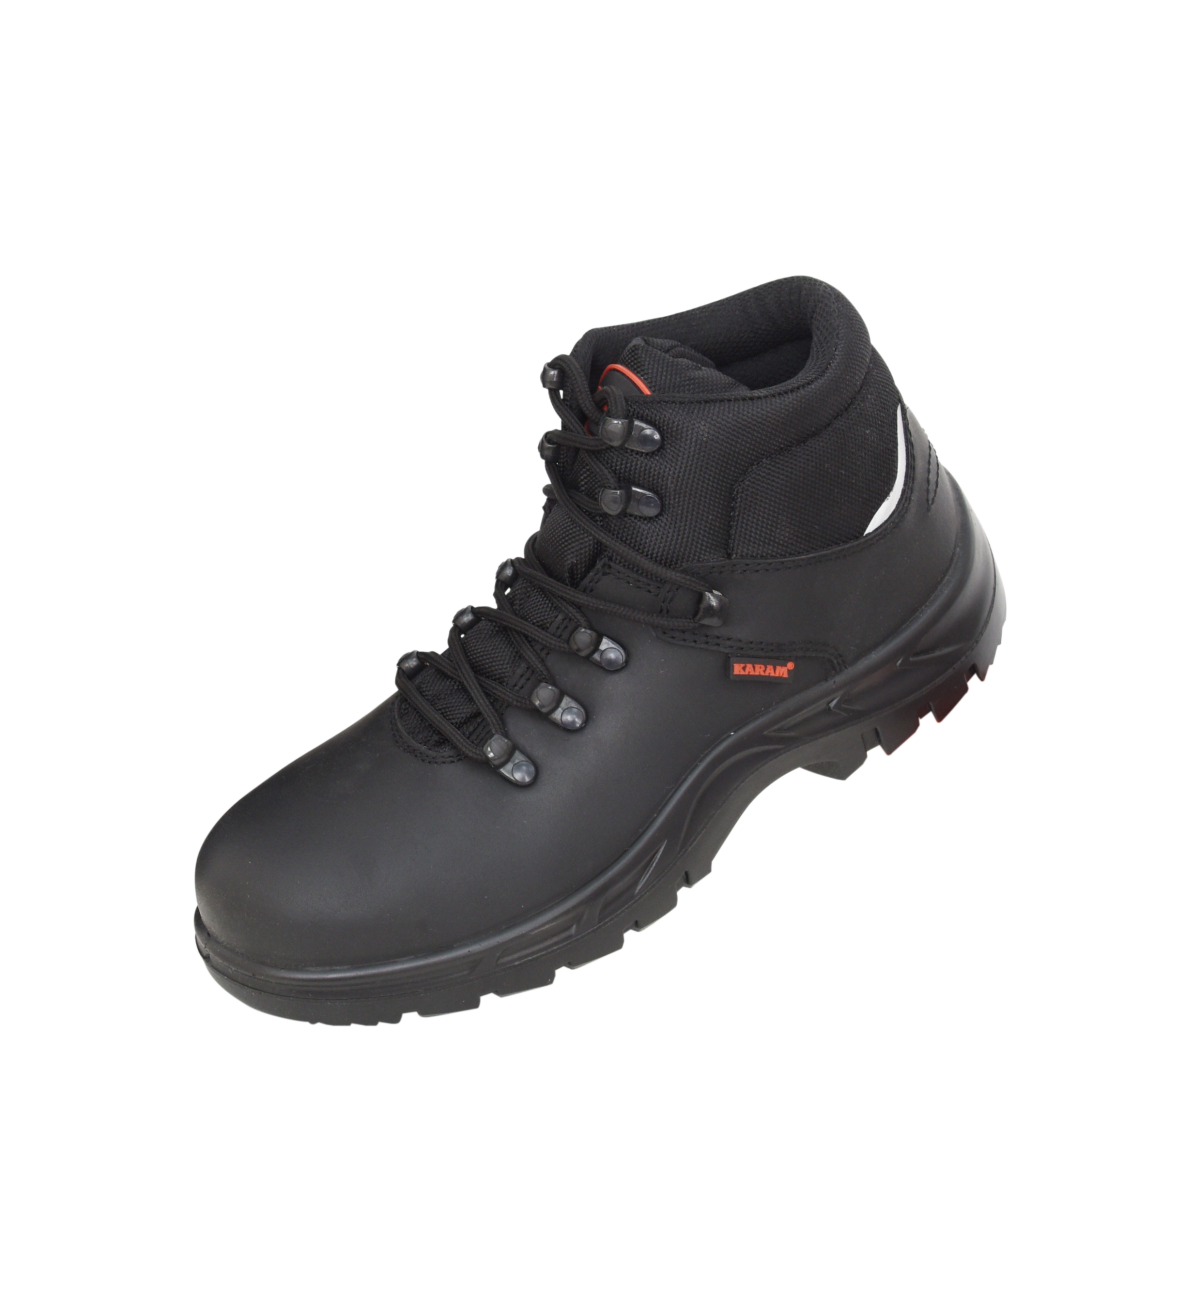 KARAM ISI Marked Buff Black Grain Leather Safety Shoe, Single Density ...